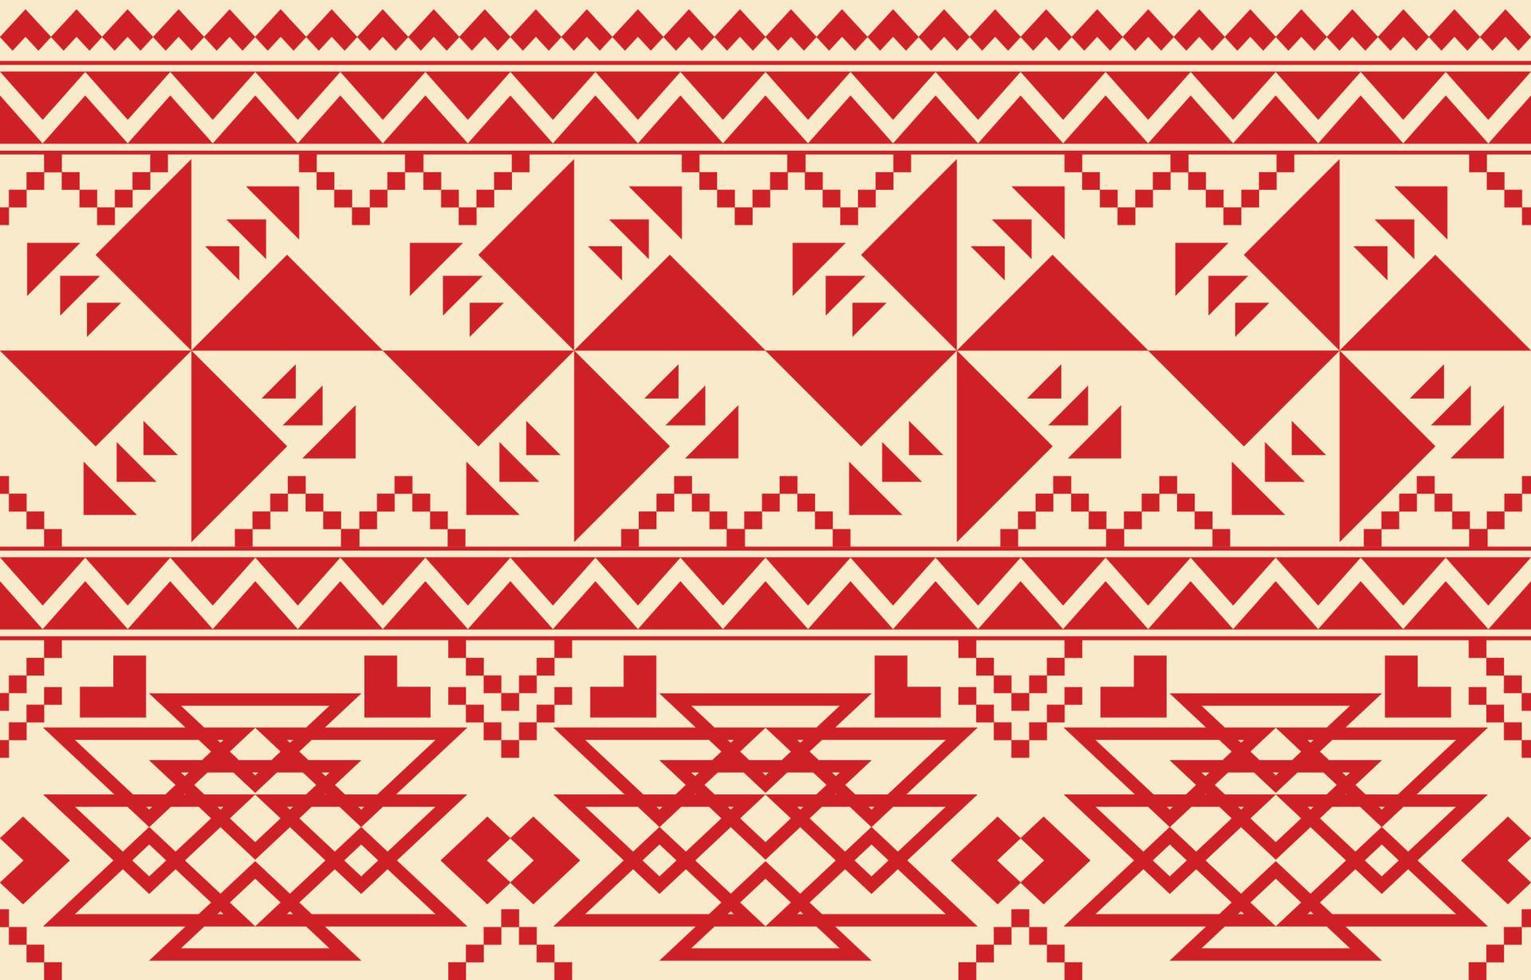 patrón impecable de origen étnico tradicional, diseño geométrico nativo americano de tela, diseño para alfombra, papel pintado, ropa, envoltura, alfombra, interior, bordado de ilustraciones vectoriales. vector